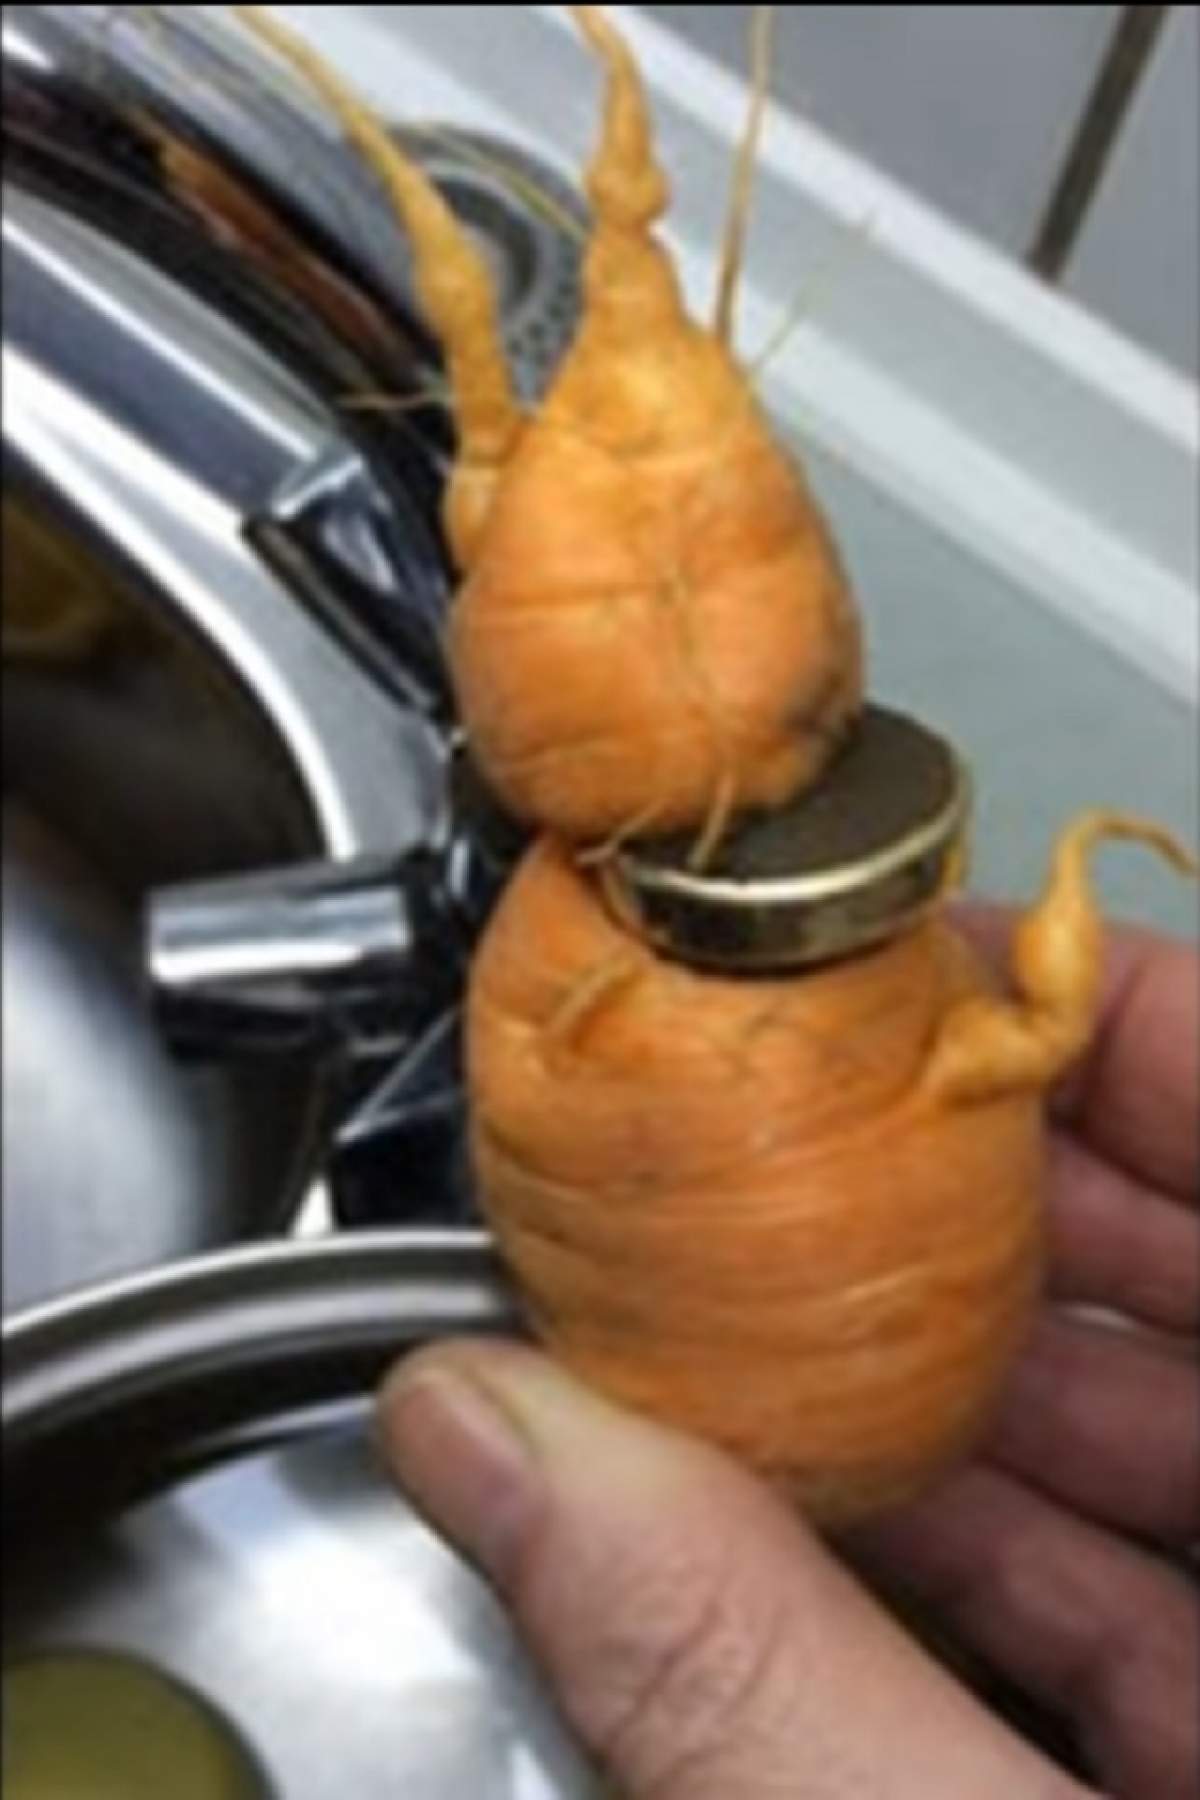 Un bărbat şi-a găsit cel mai preţios lucru într-un morcov. Ce se ascundea în legumă?